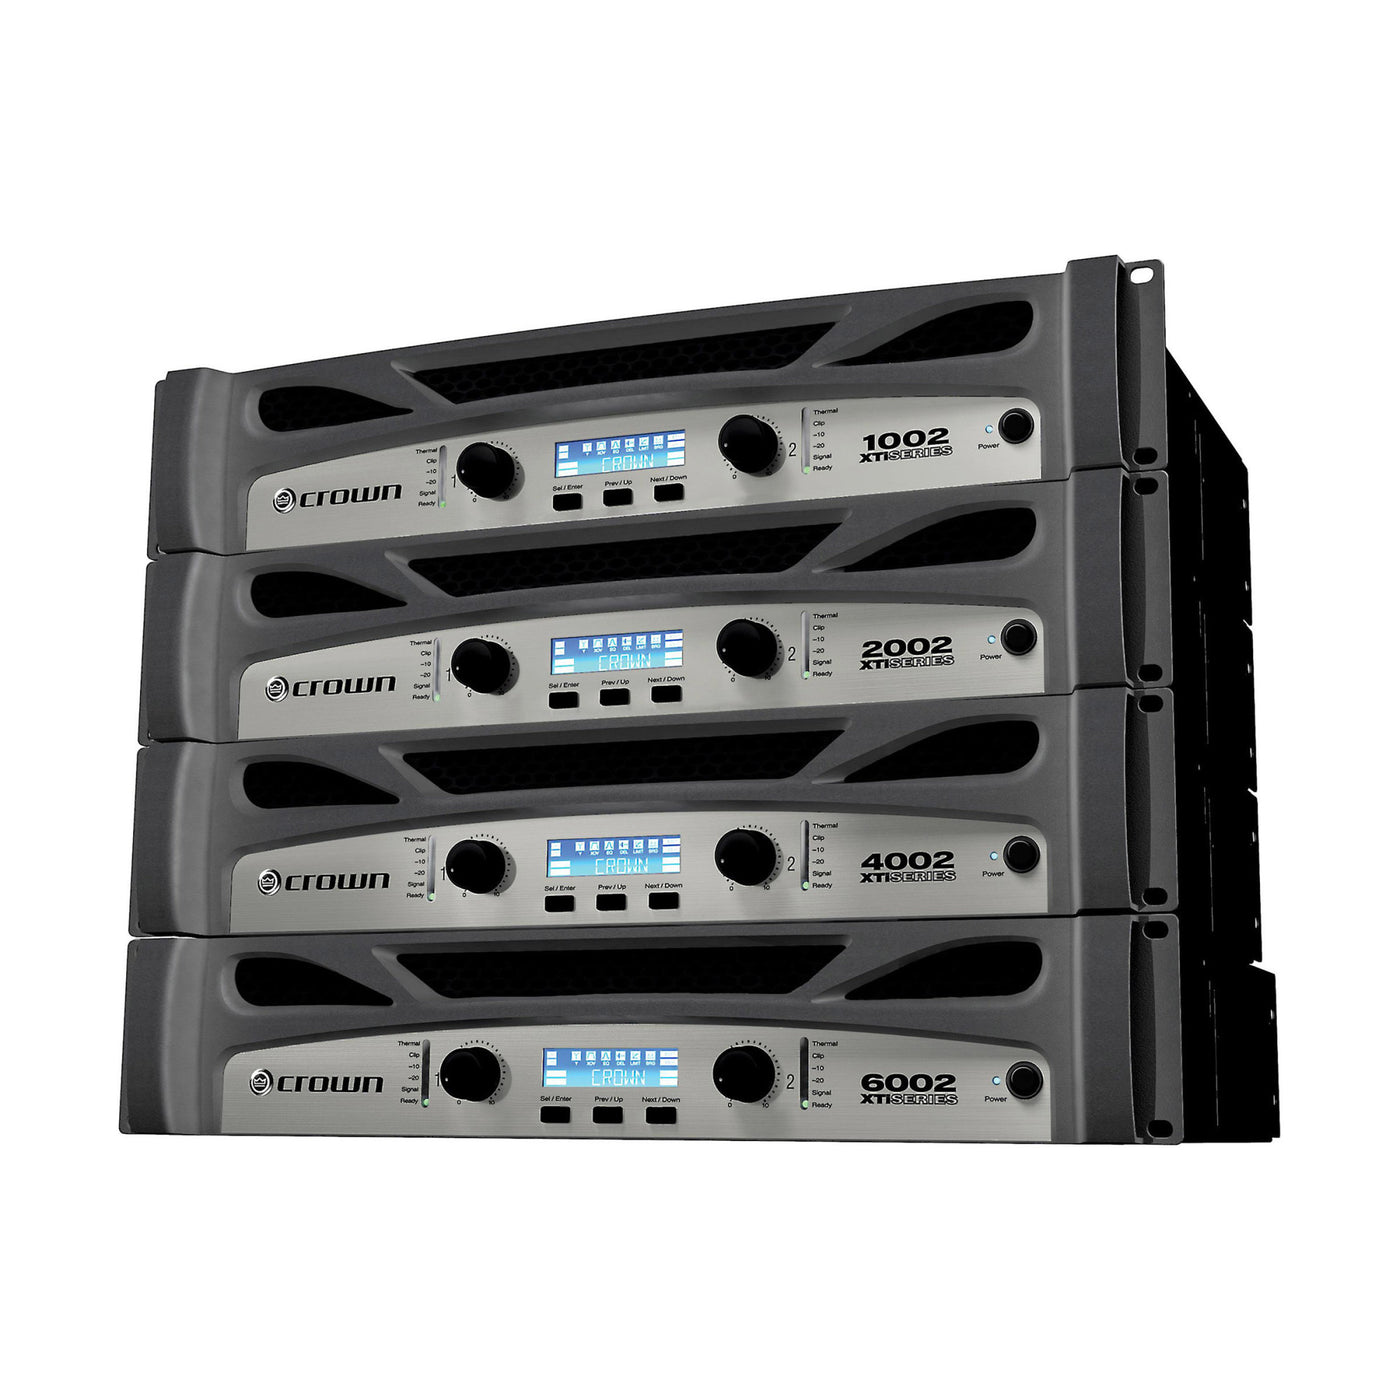 Crown XTi 1002 500W 2-channel Power Amplifier